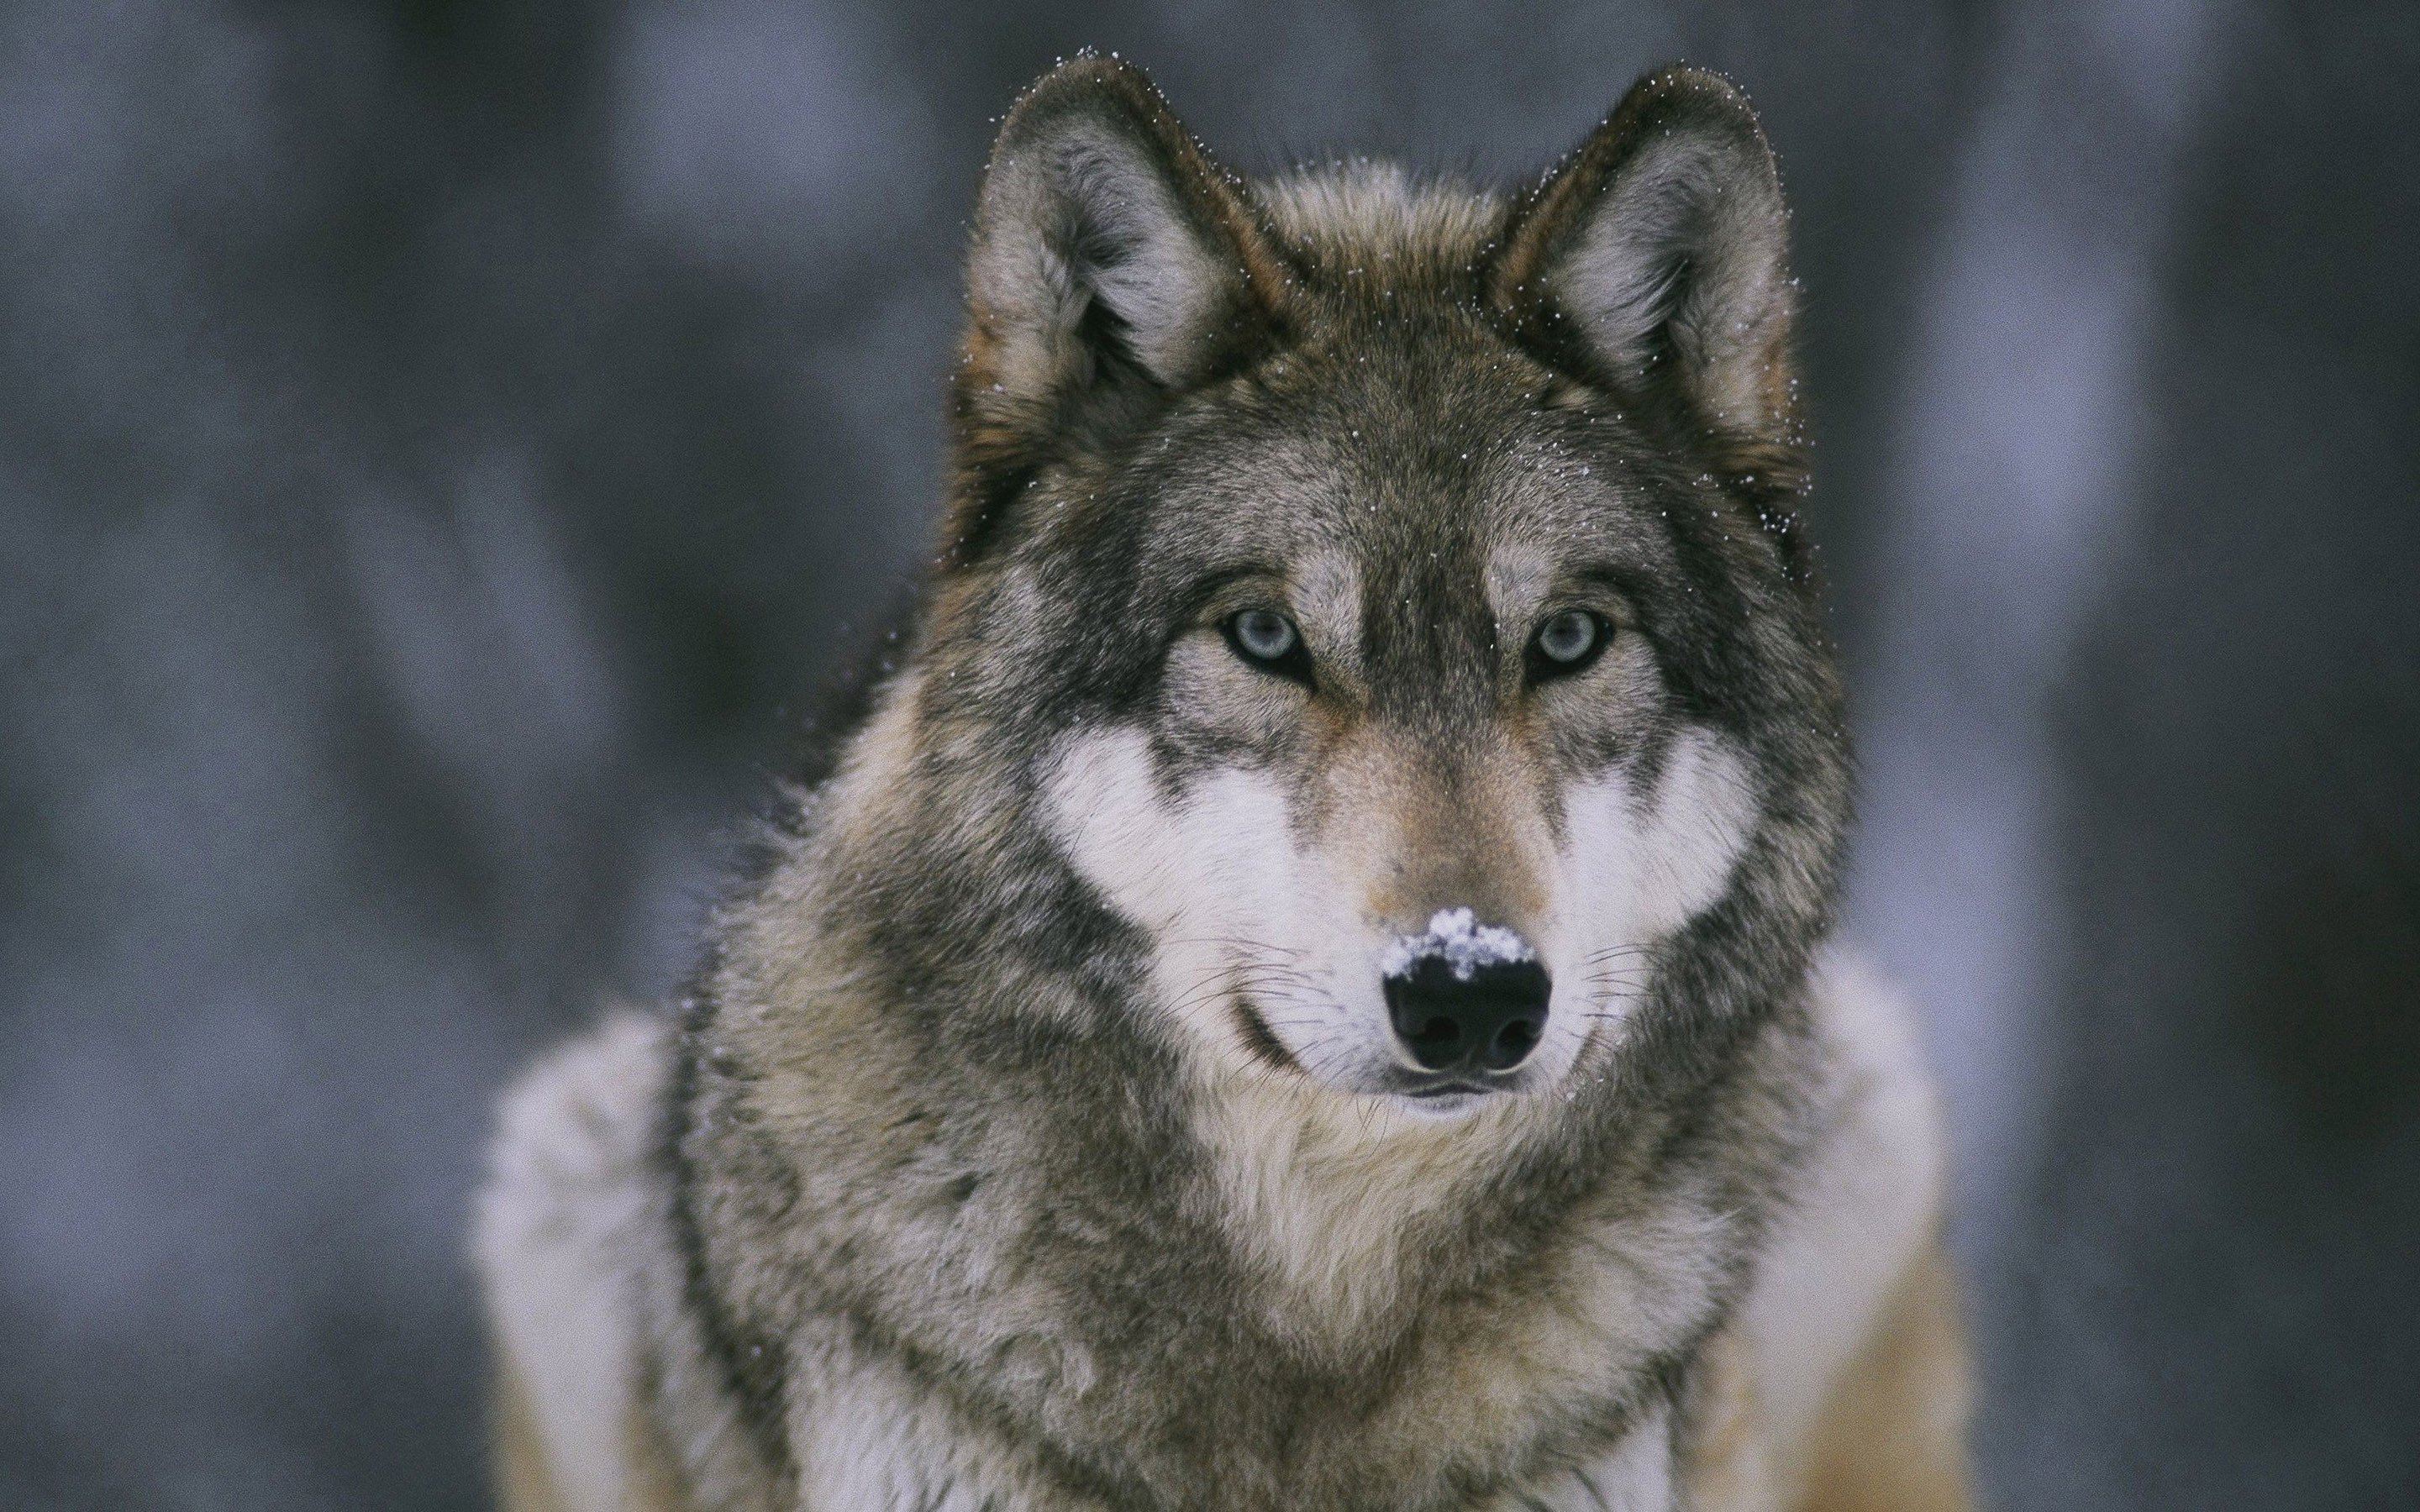 HD Wolf Wallpapers 1080p - WallpaperSafari